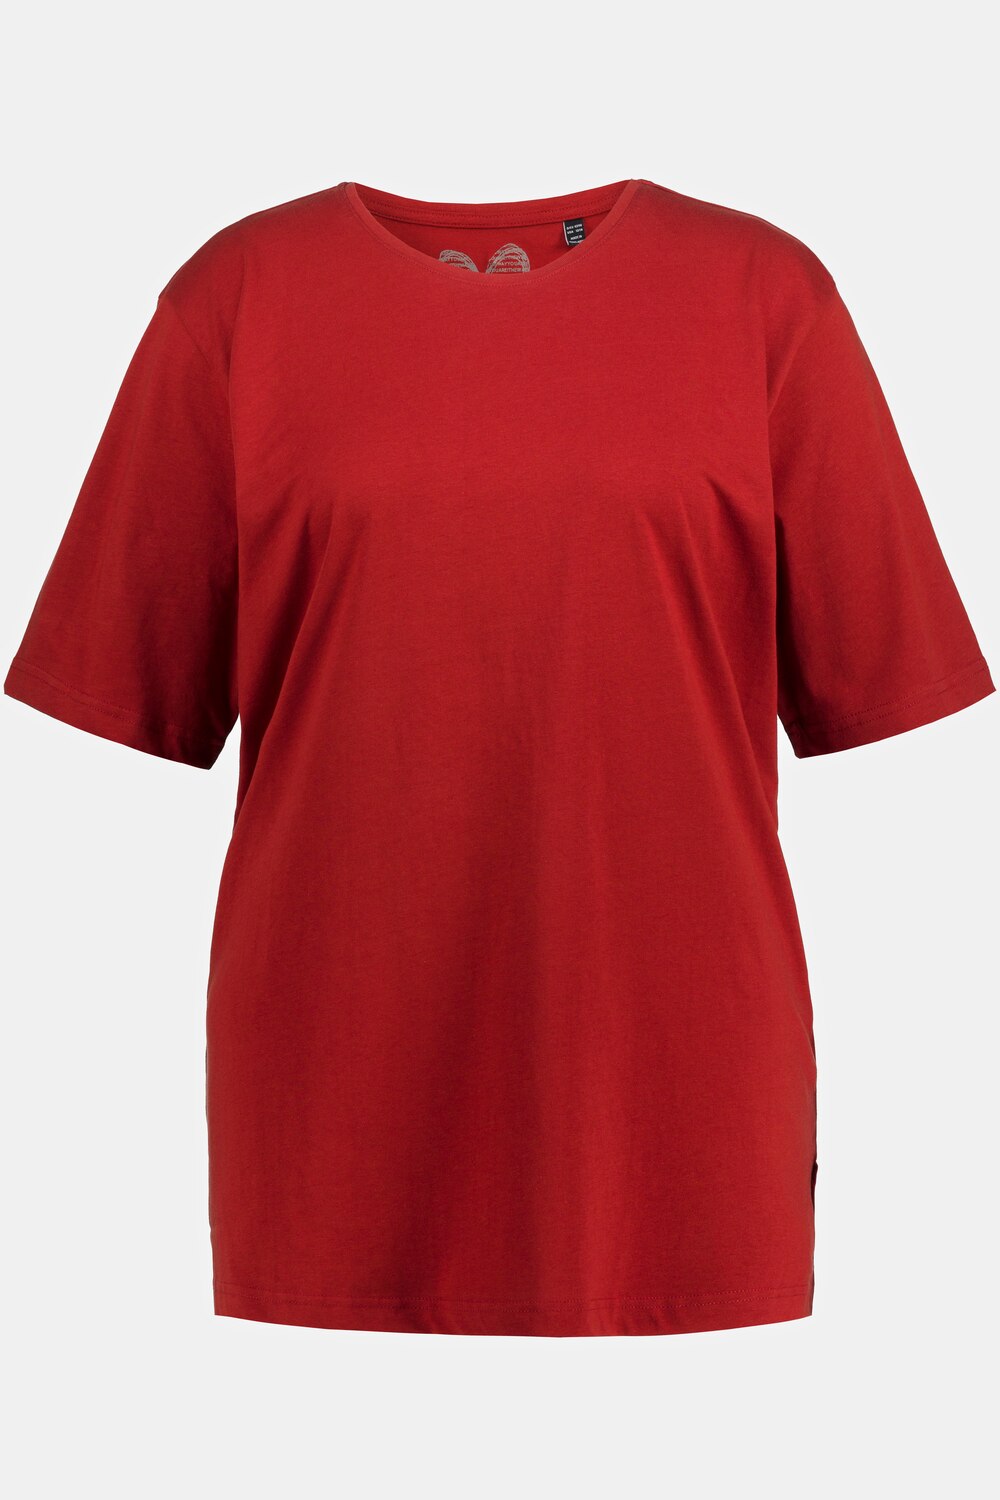 Grote Maten T-shirt, Dames, rood, Maat: 54/56, Ulla Popken